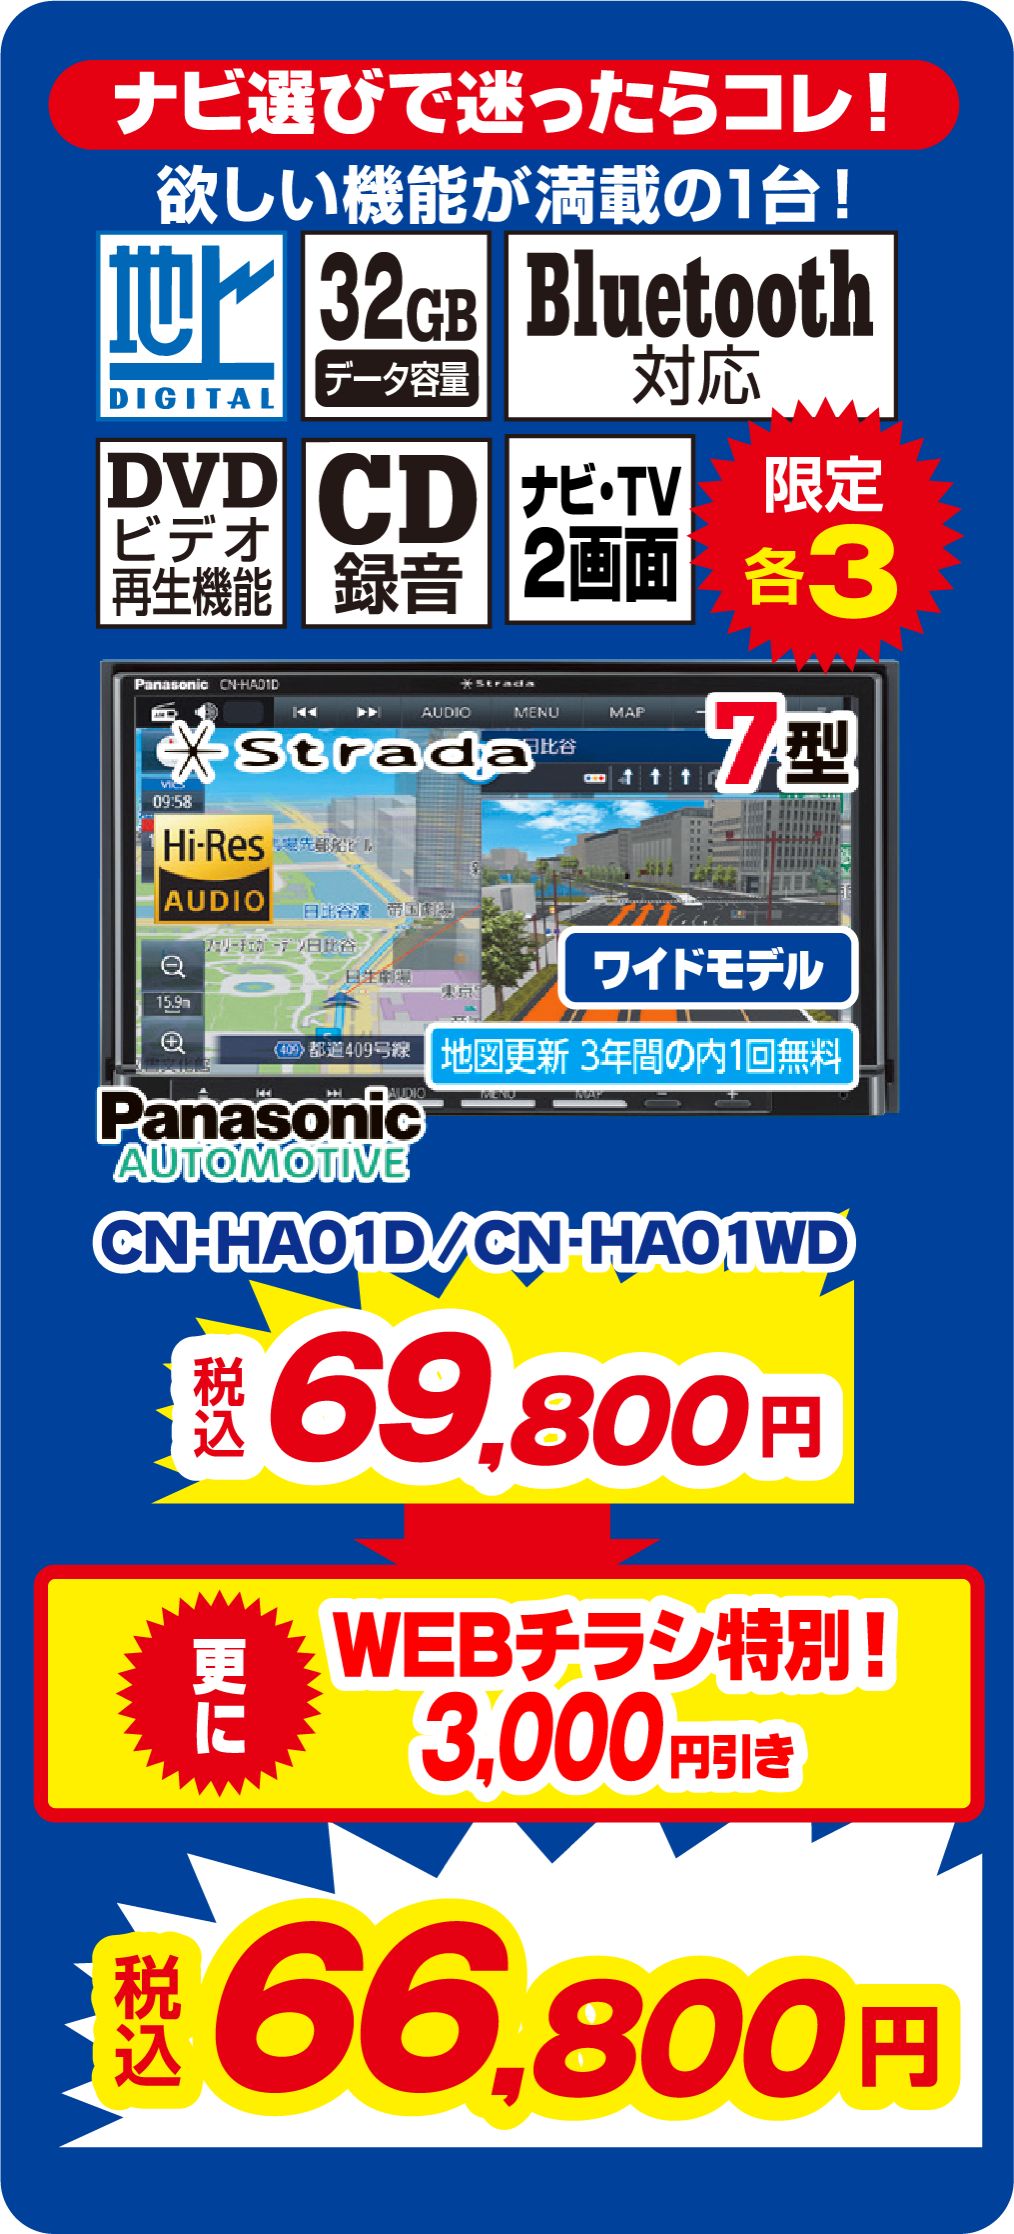 Panasonic CN-HA01D、CN-HA01WD